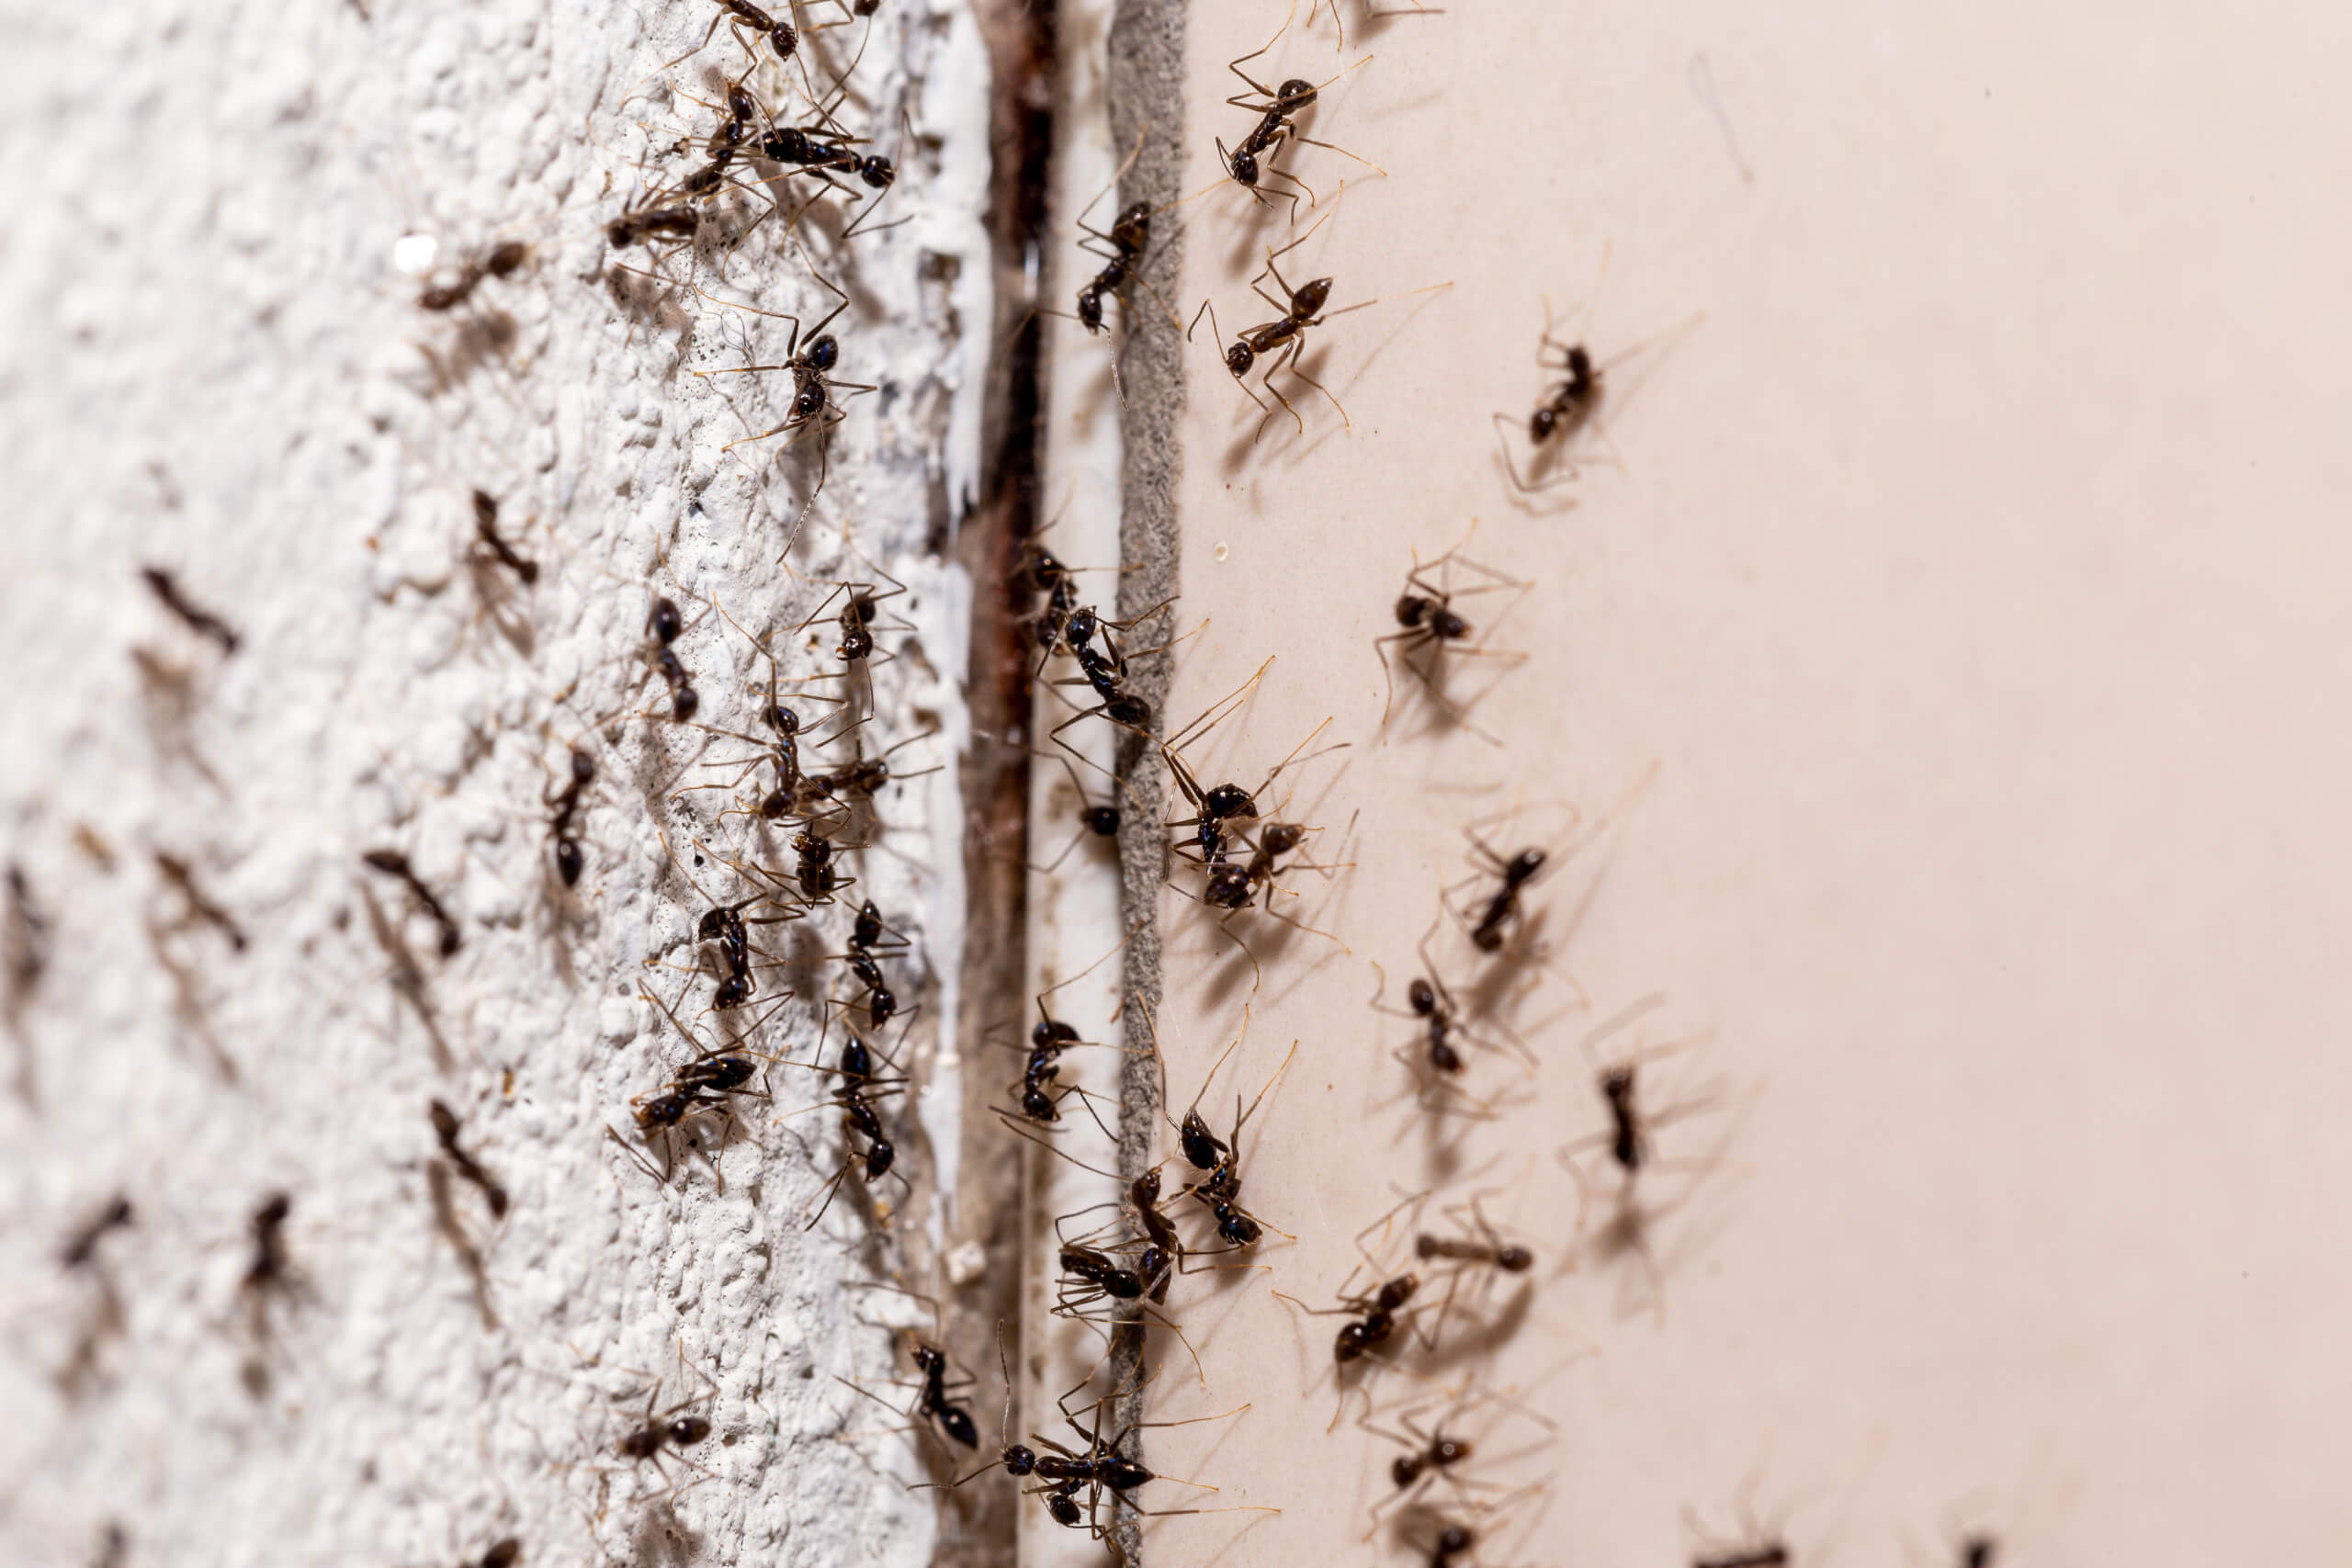 Μυρμήγκια σε φωλιά εσωτερικά του τοίχου, απεντόμωση μυρμηγκιών από την enviropest.gr